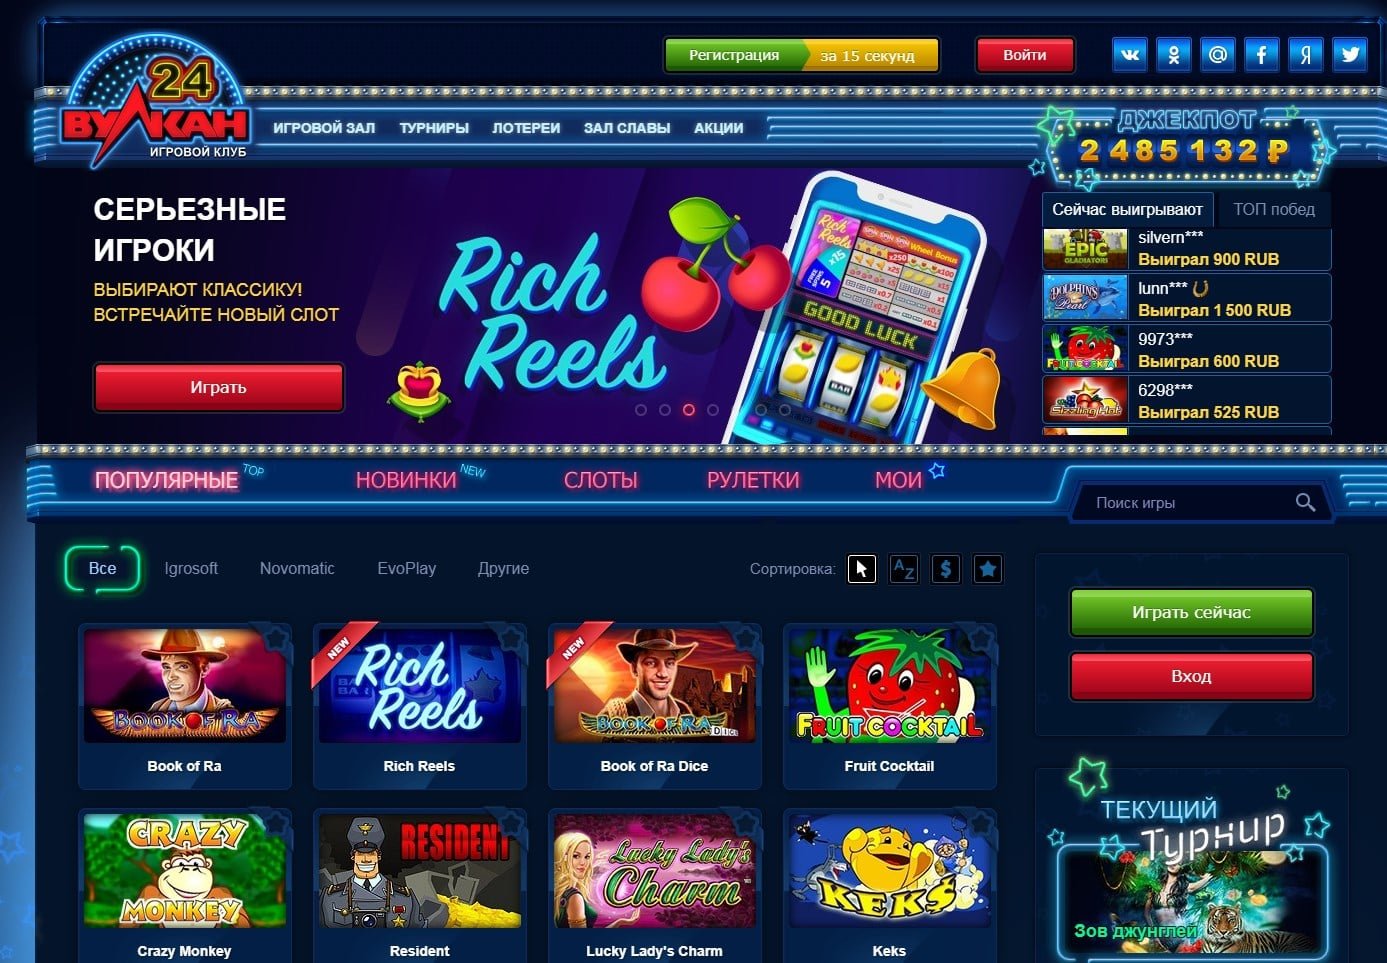 ограничений вулкан интернет казино лучшее место для азартного досуга онлайн клуб